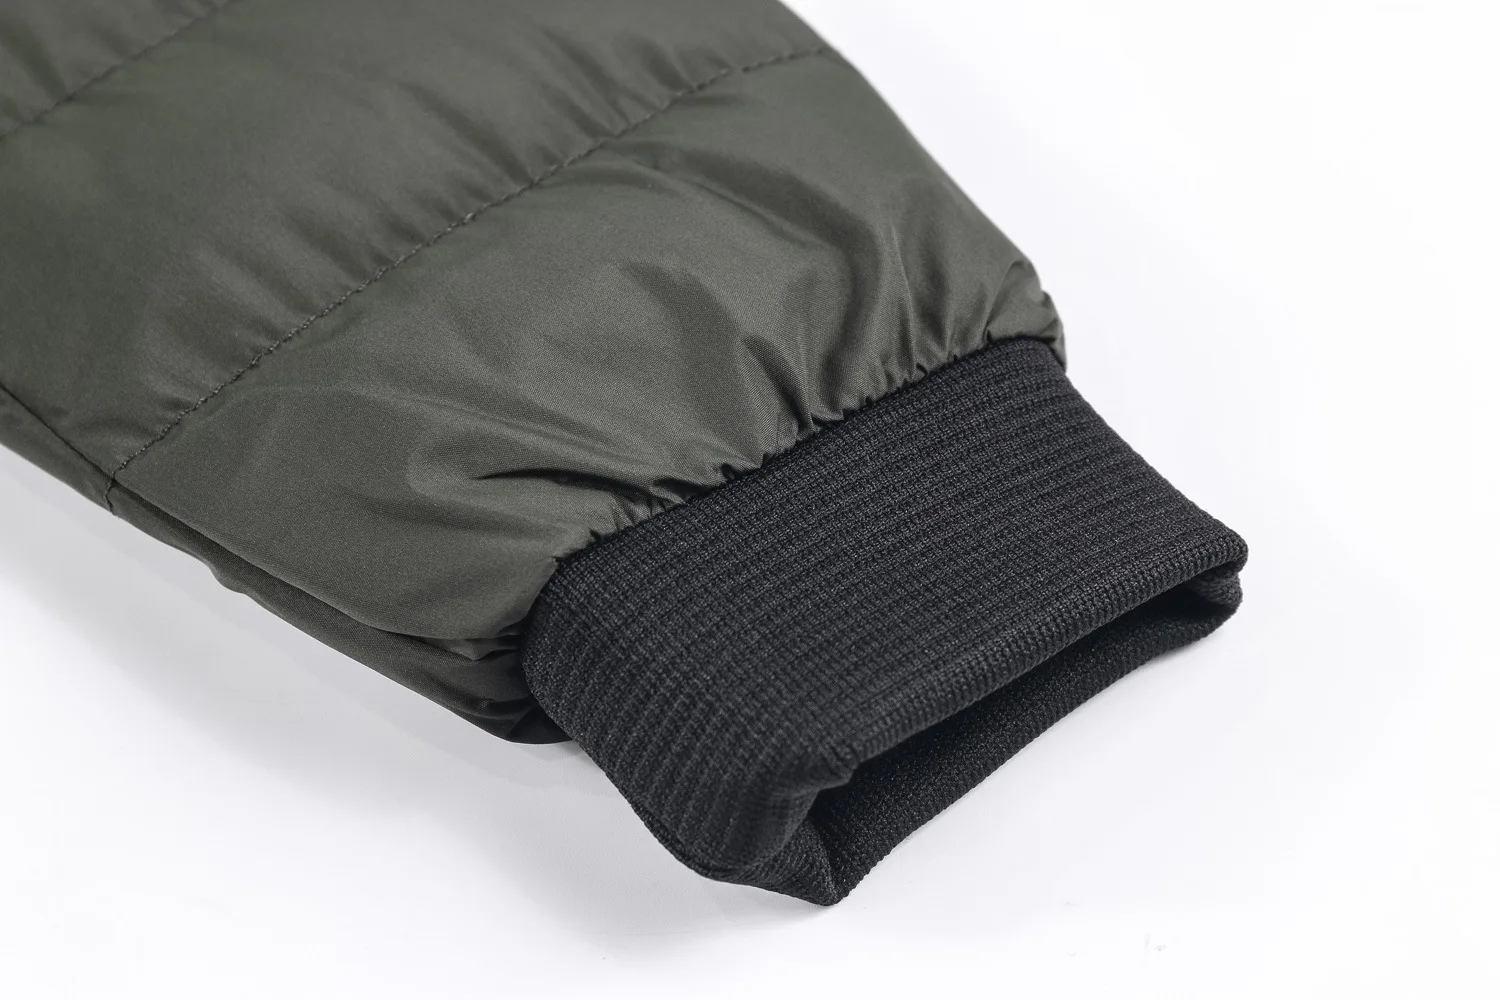 Зимняя куртка с капюшоном для мужчин брендовая модная ветрозащитная стеганая куртка армейские военные тактические пальто парки Плюс Размер M-5XL